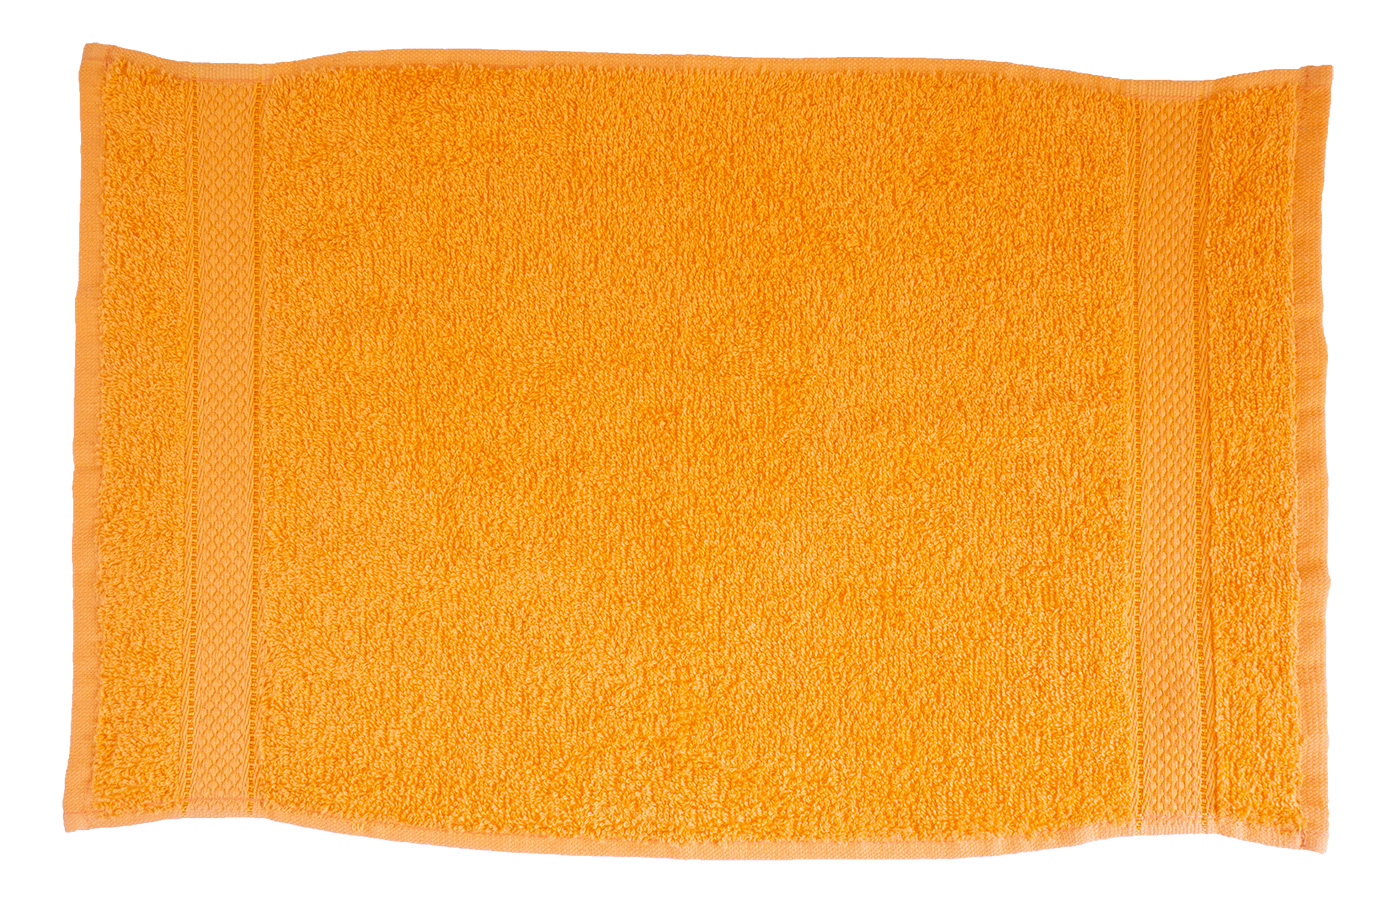 Narancsárga törölköző 70x130 Bordűrös